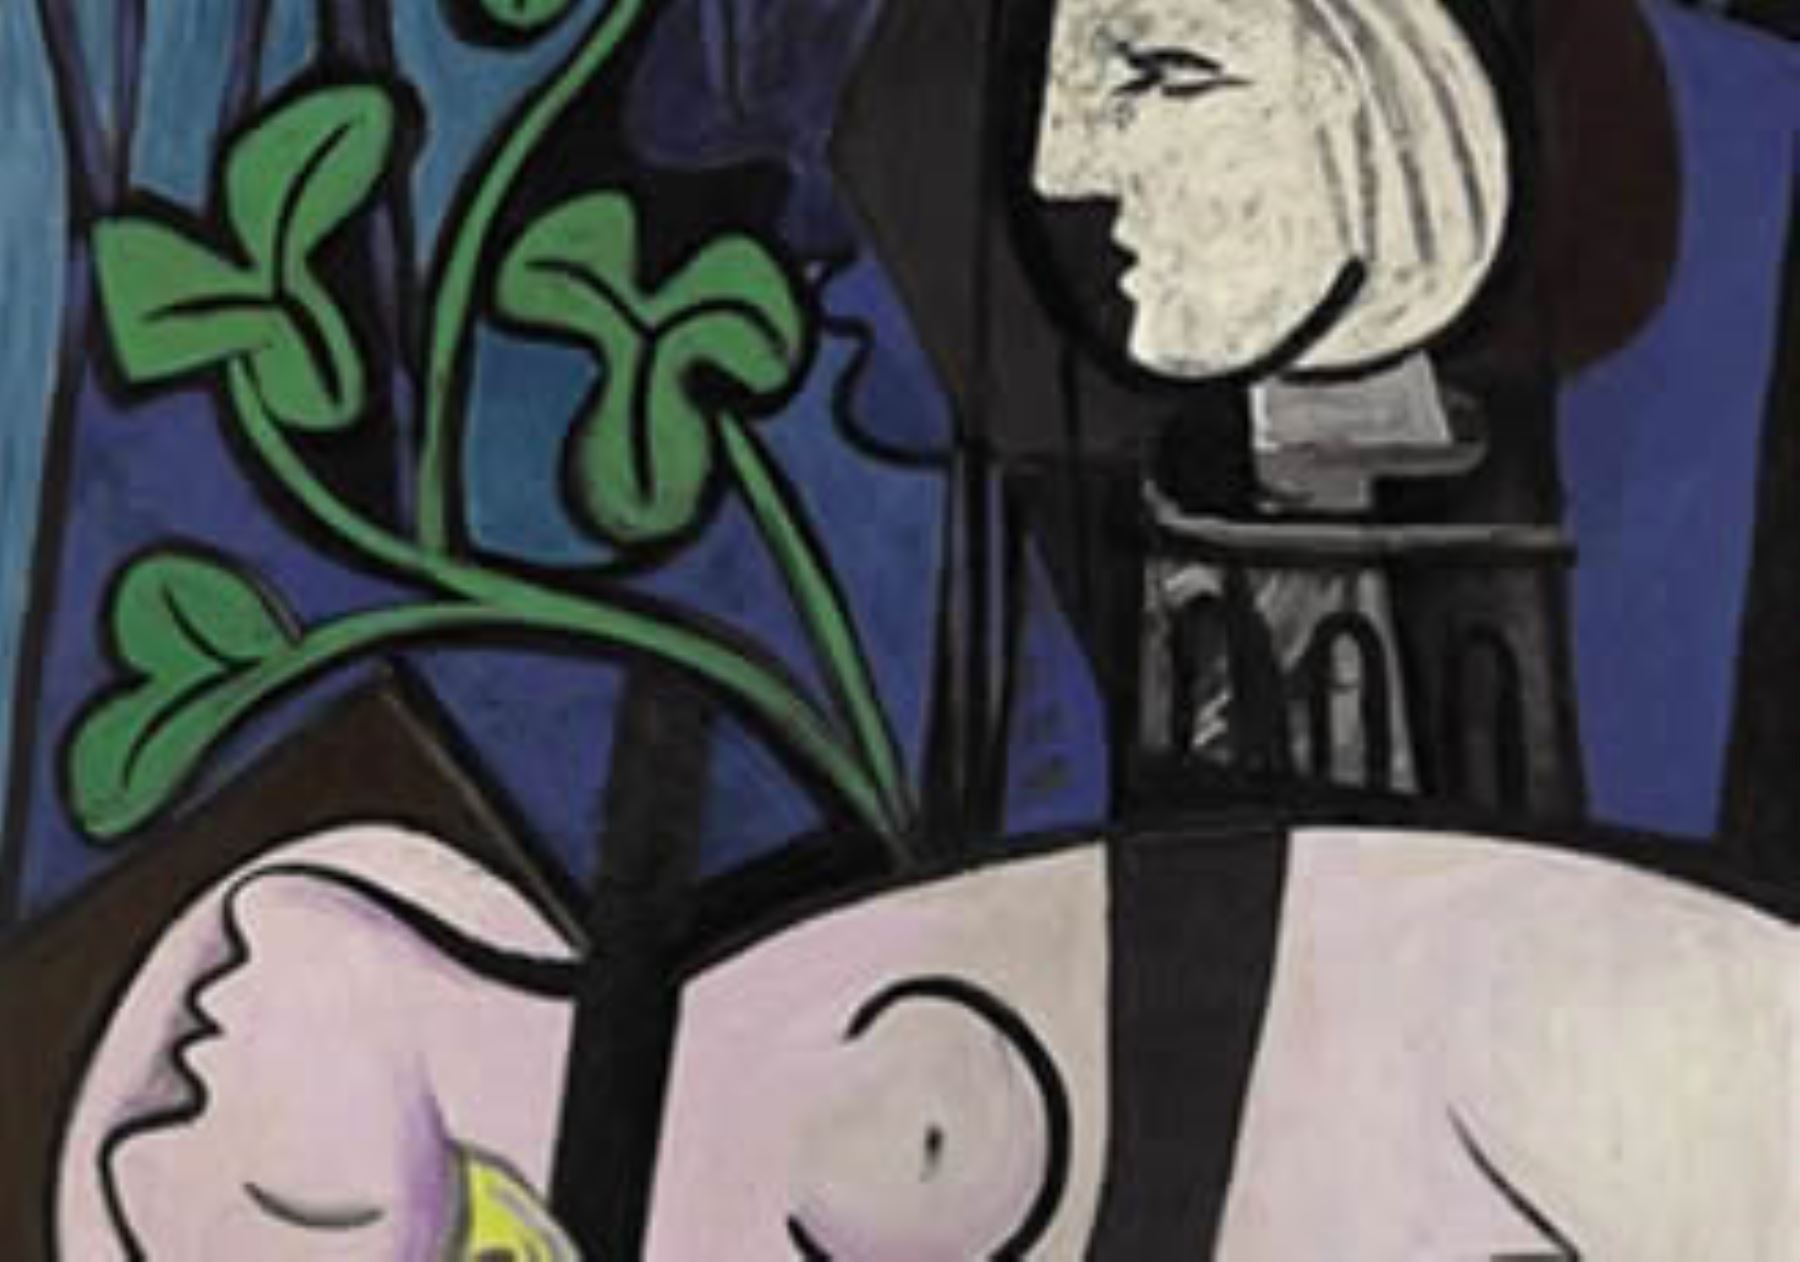 6- Pablo Picasso, "Desnudo, hojas verdes y busto", vendido por 106,48 millones de dólares el 4 de mayo de 2010 en Christie